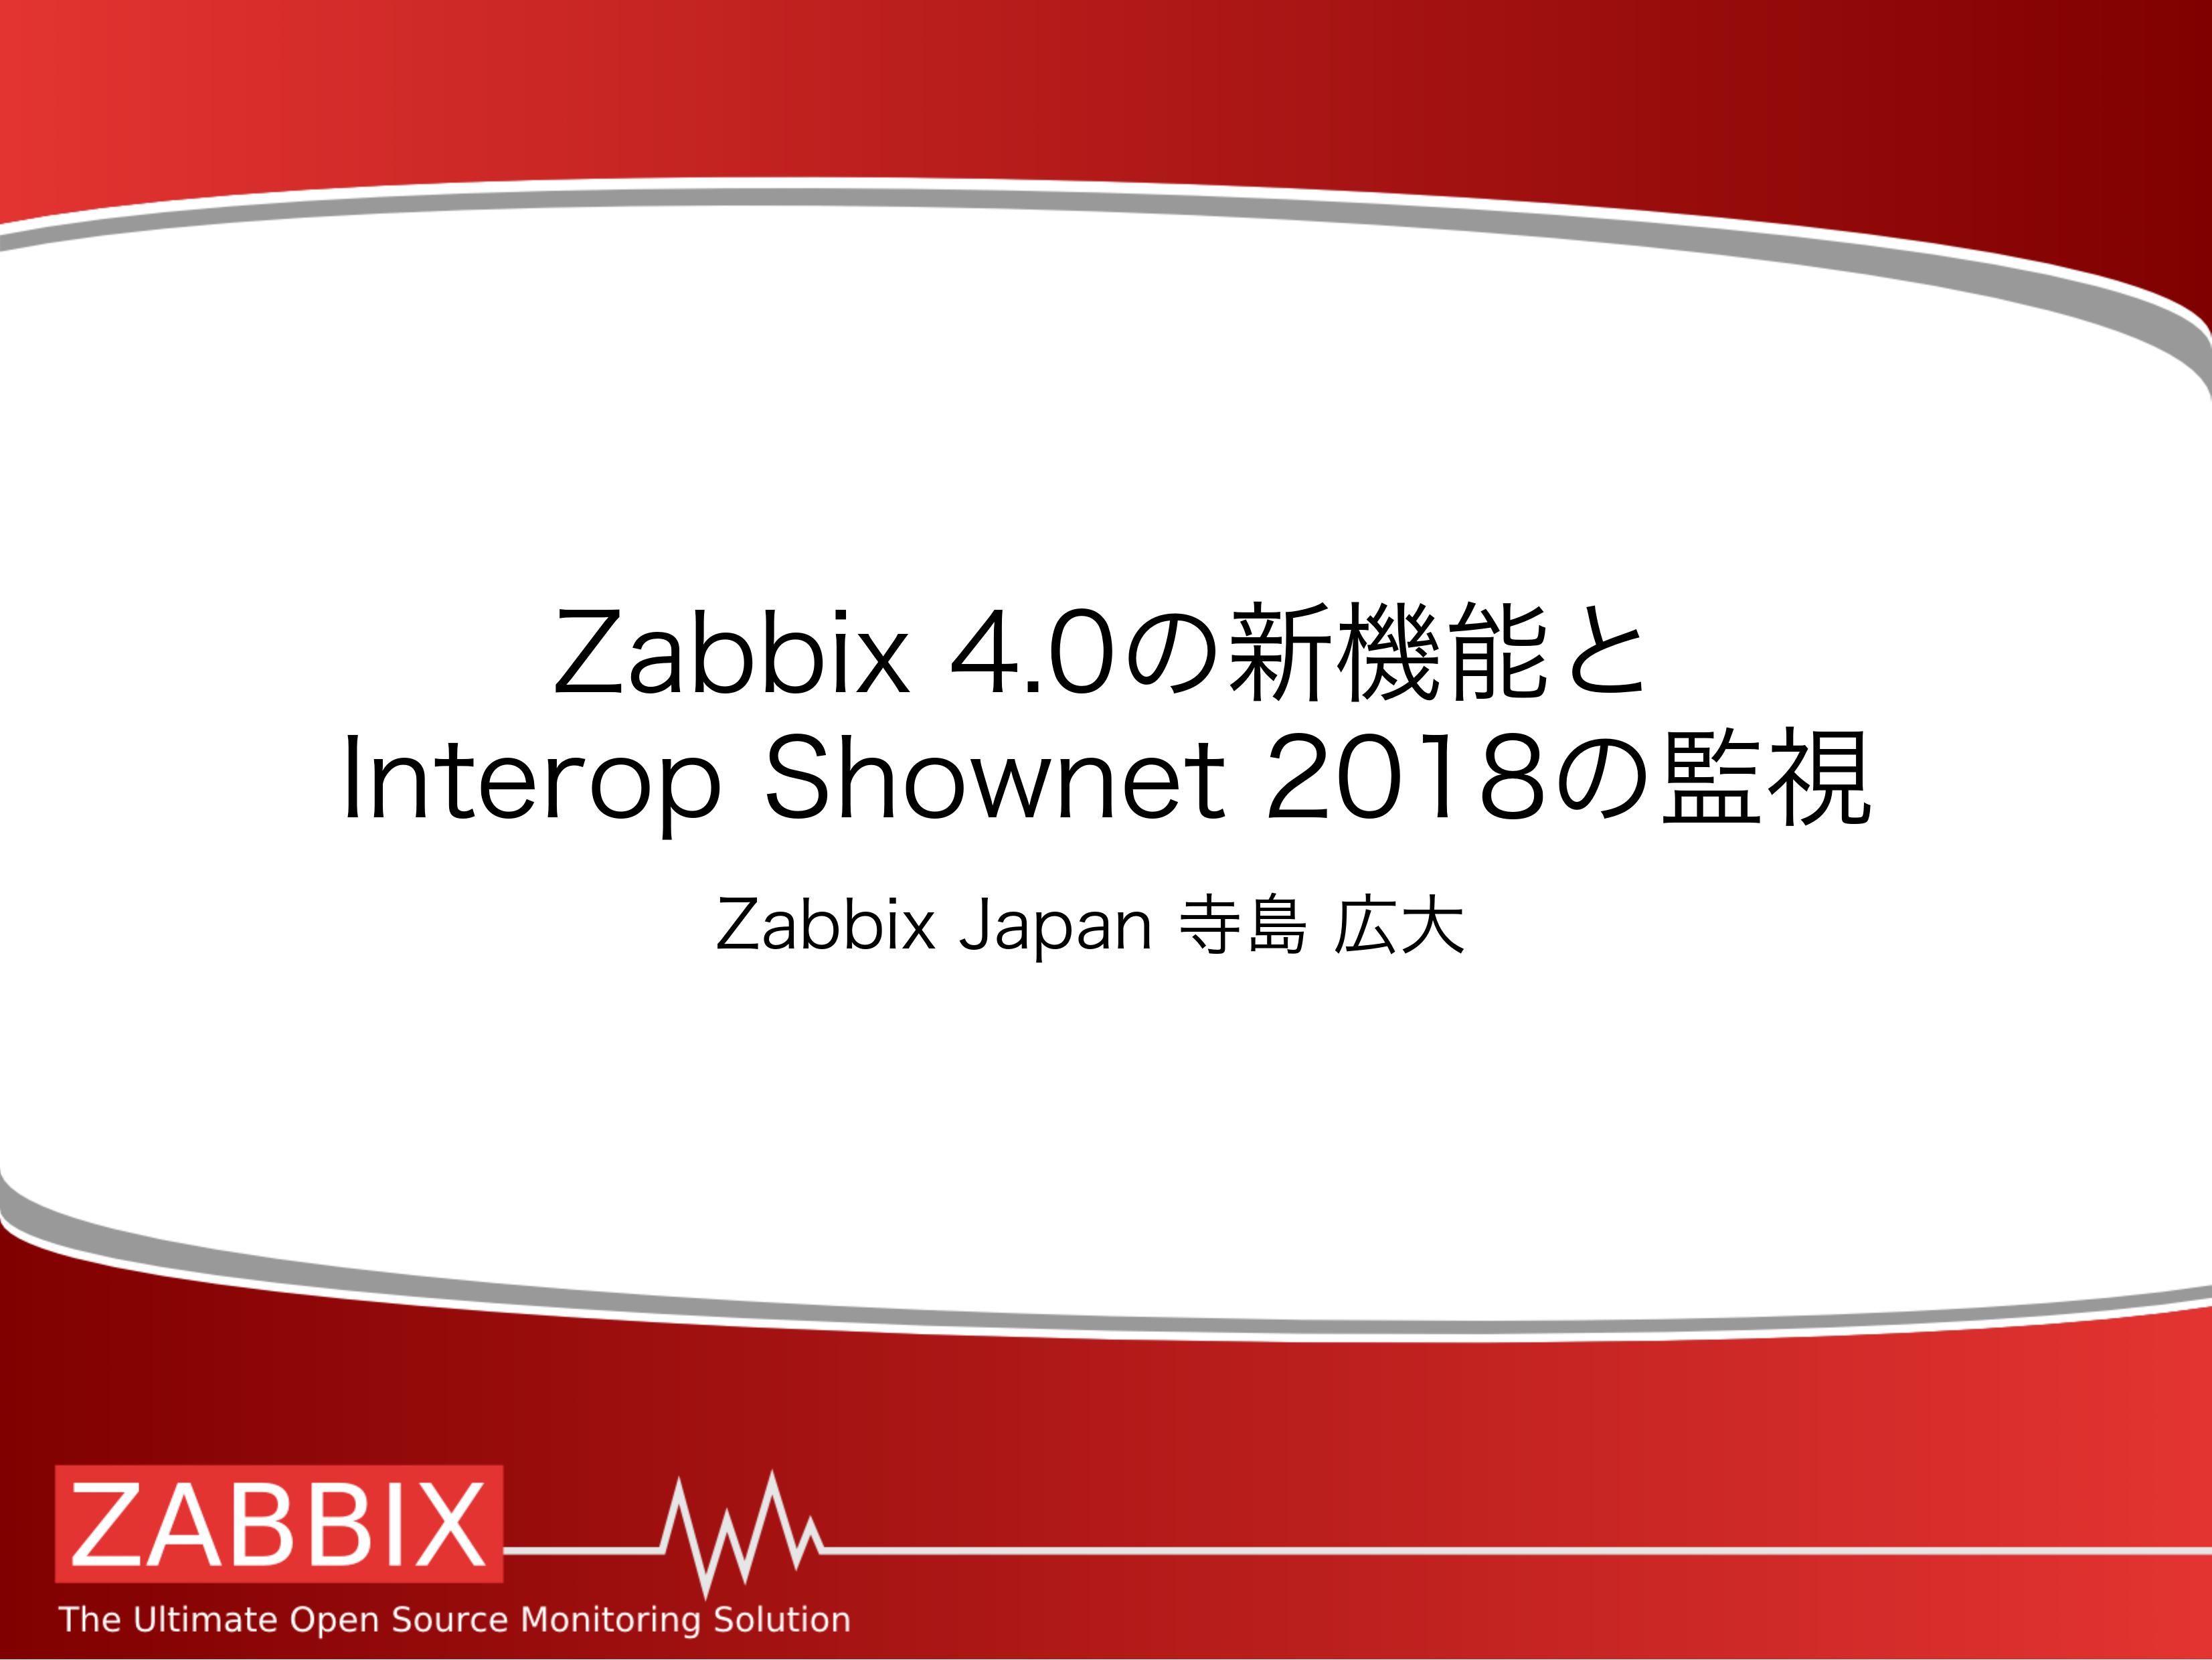 【セミナーレポート】Zabbix 4.0機能紹介(1/2)